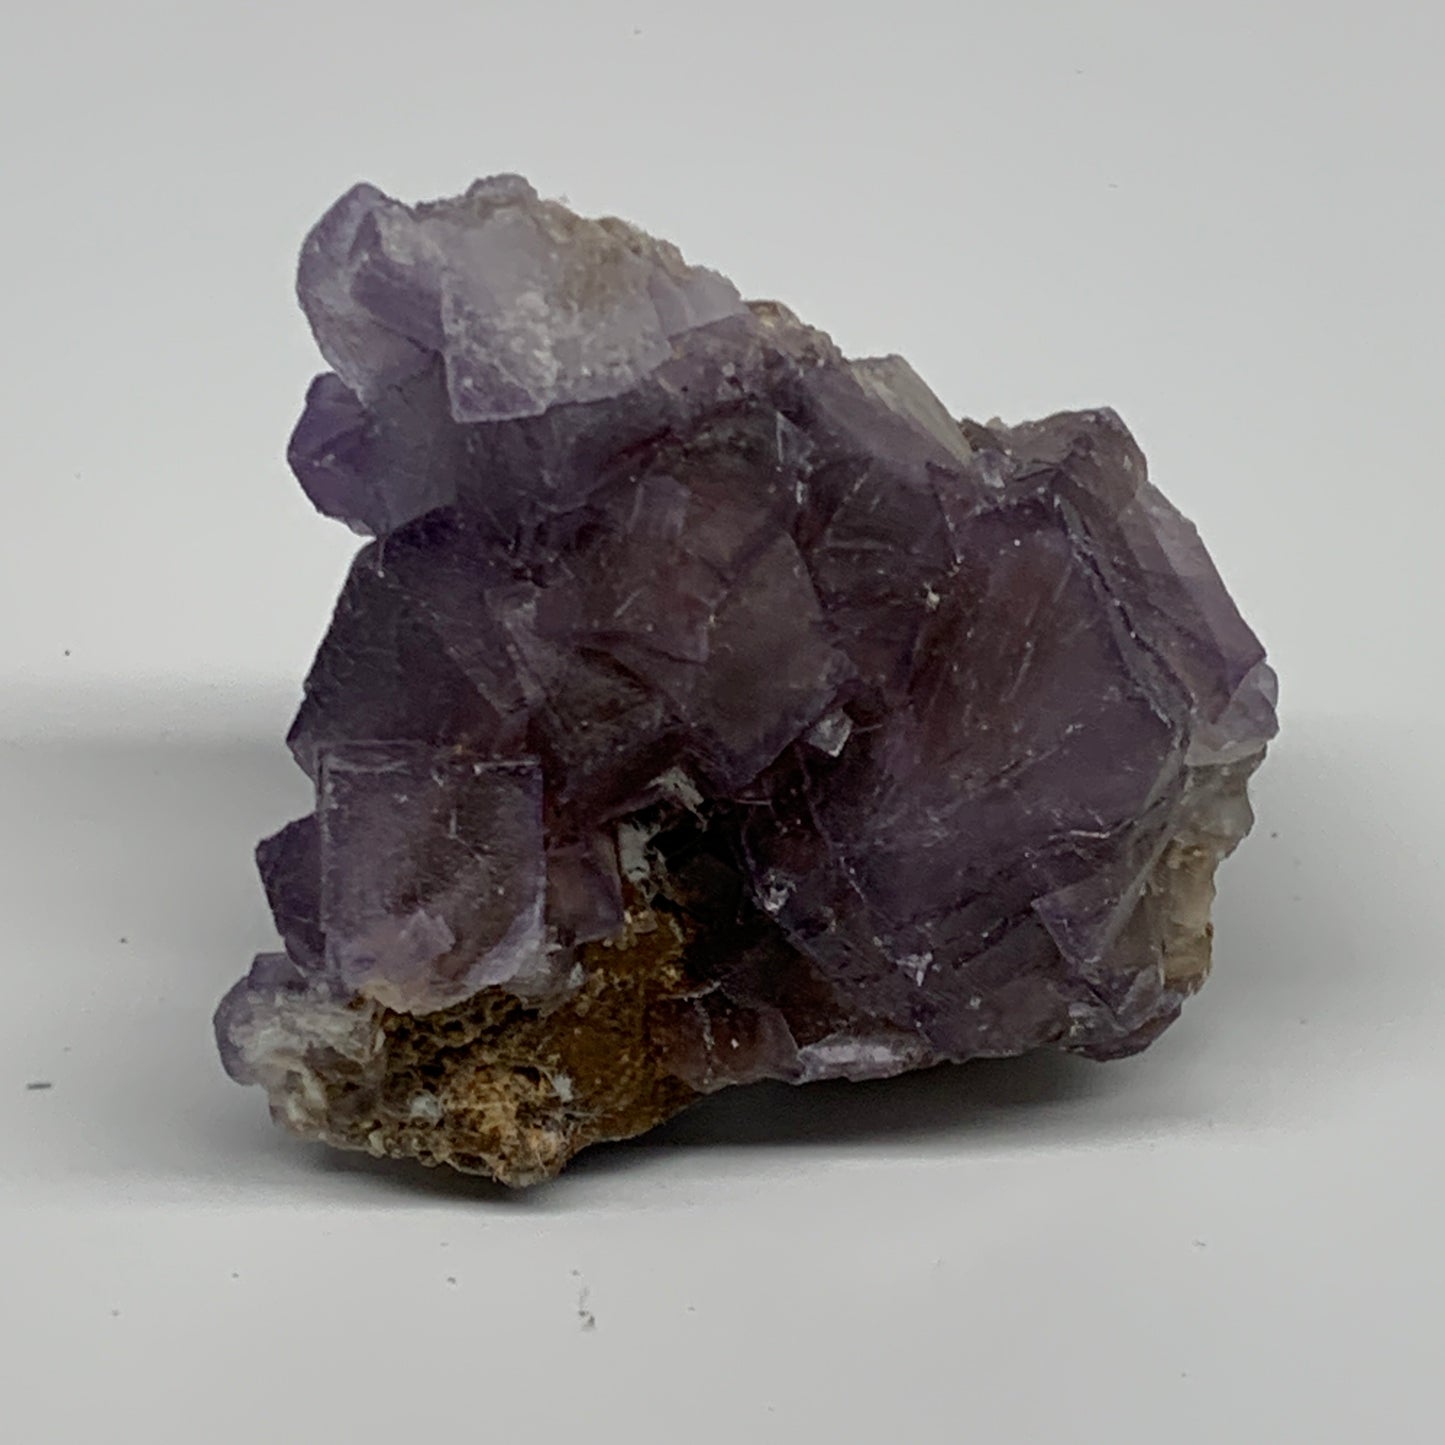 192.8g, 2.5"x2.5"x1.6", Purple Fluorite Crystal Mineral Specimen @Pakistan, B273